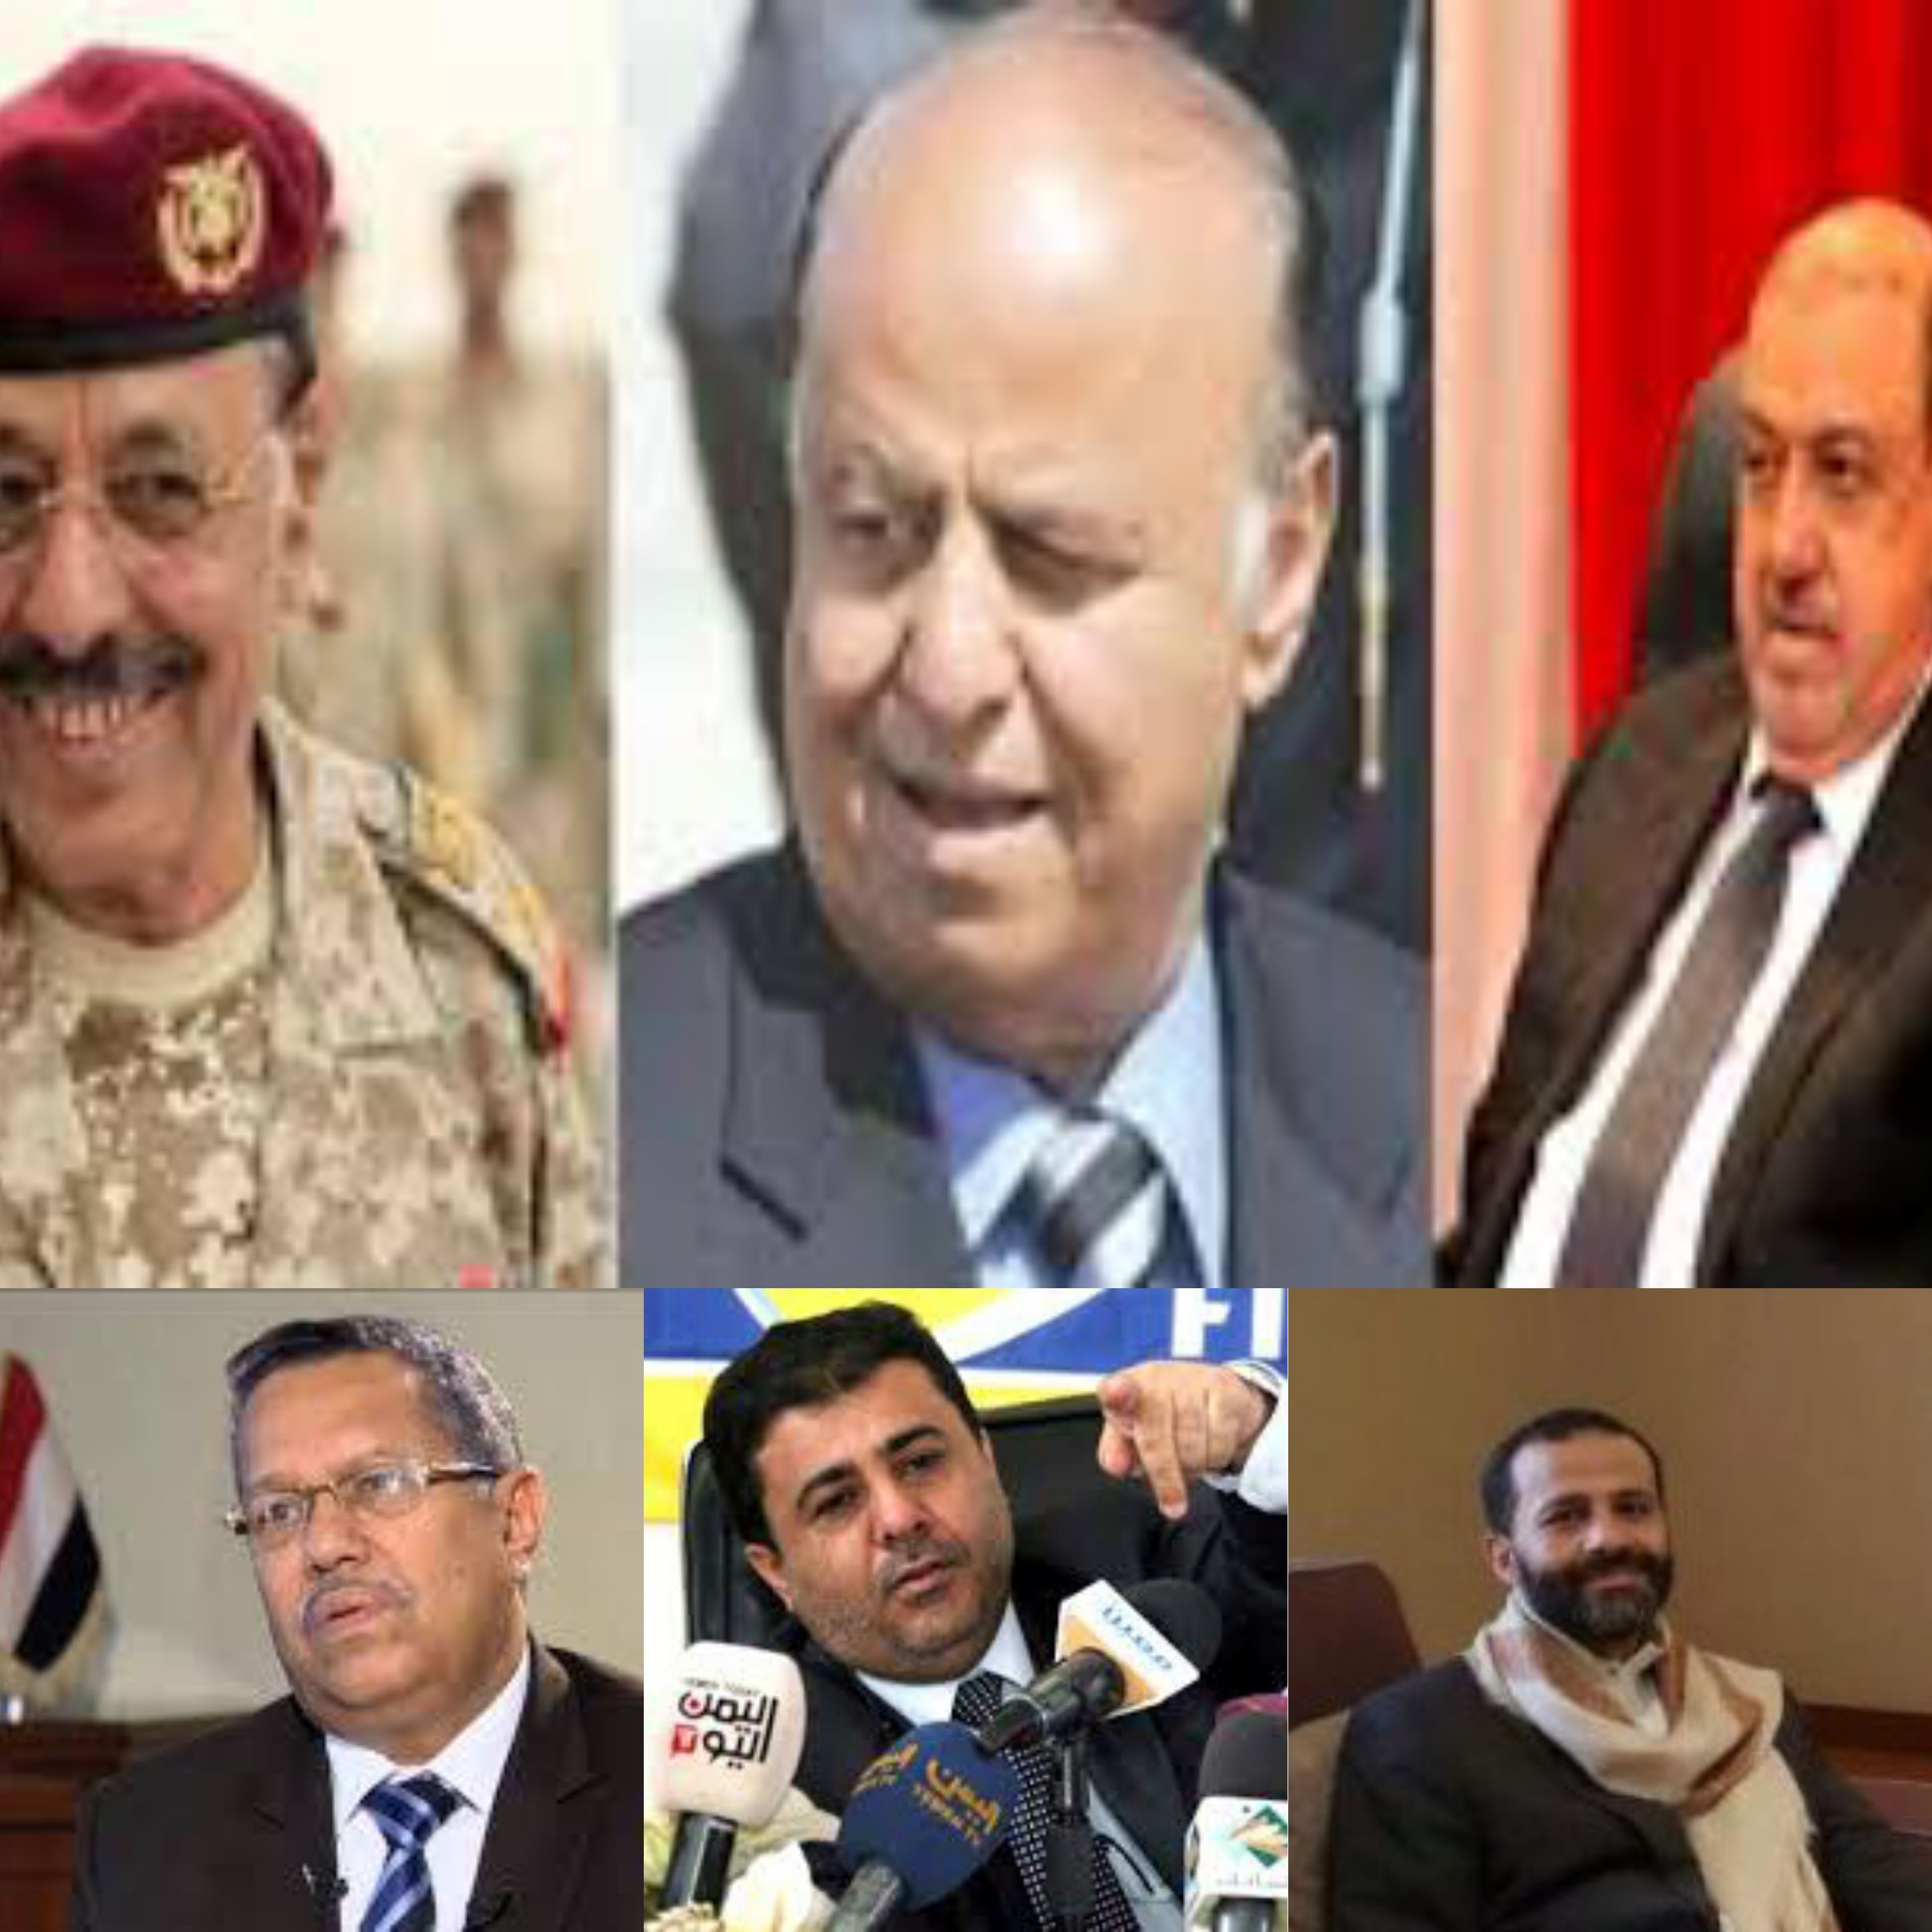 مراقبون يمنيون وعرب الرئيس منصور هادي يتعاون مع عصابات مافيا